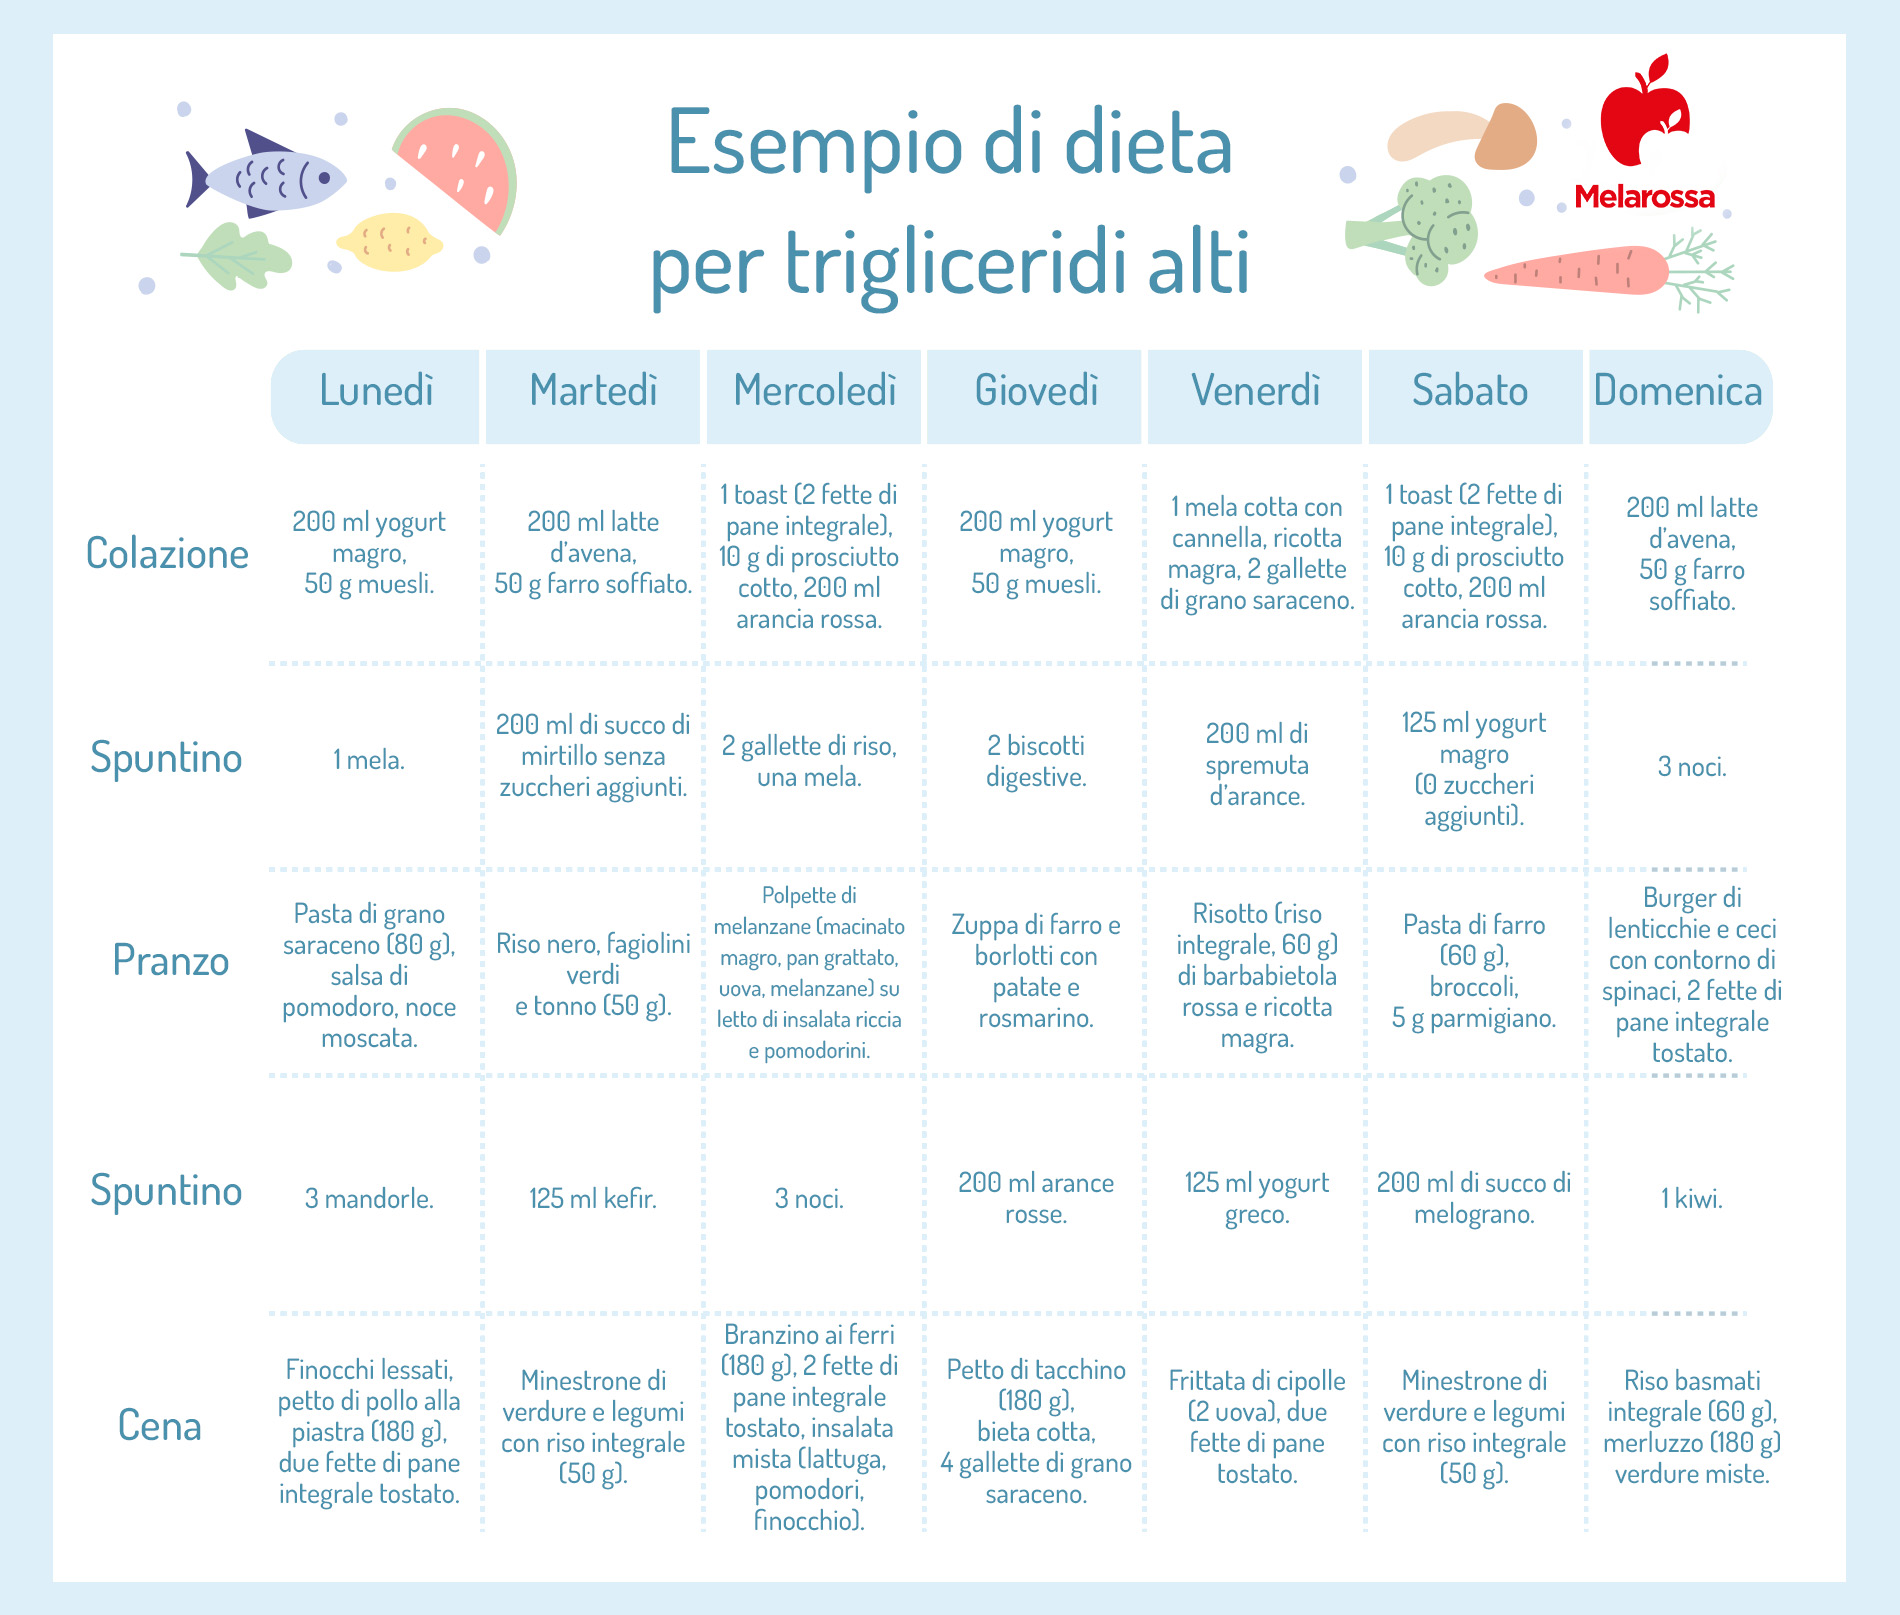 Esempio di dieta per trigliceridi alti: il menù settimanale 